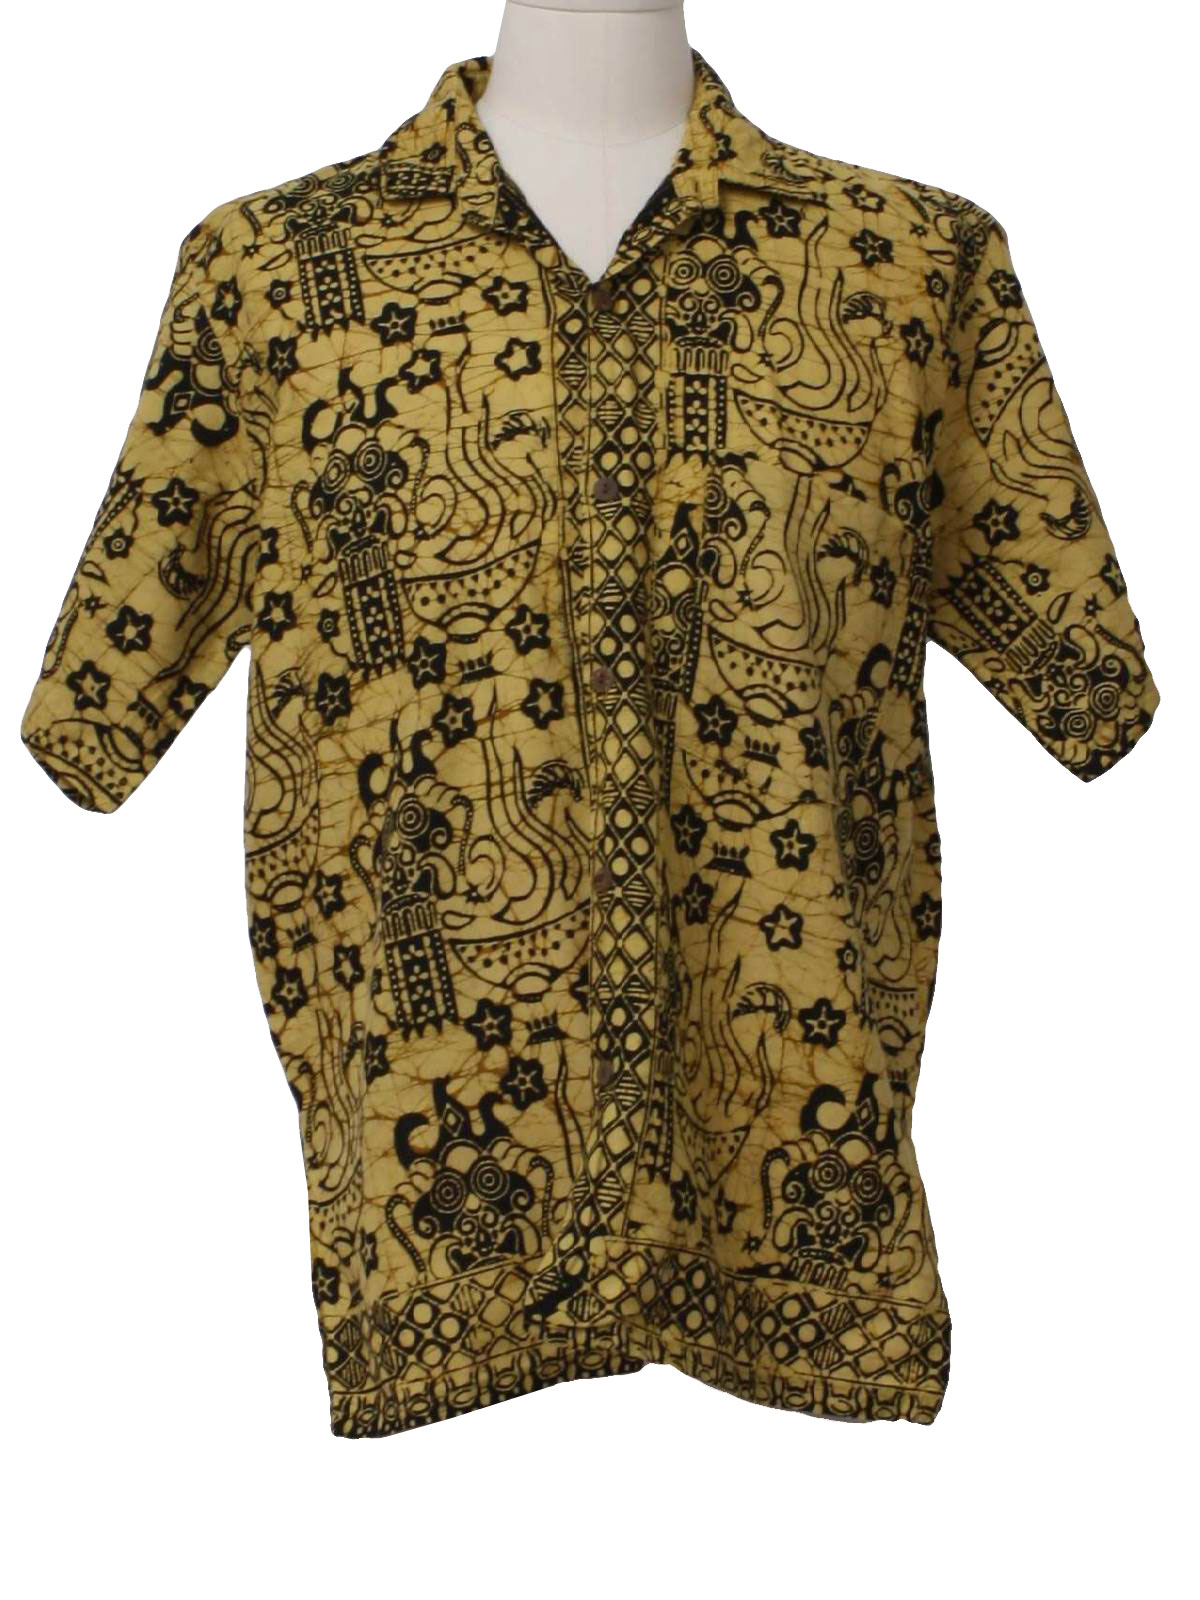 Vintage 1980s Hippie Shirt 80s Bali Bagus Batik Mens Soft Gold